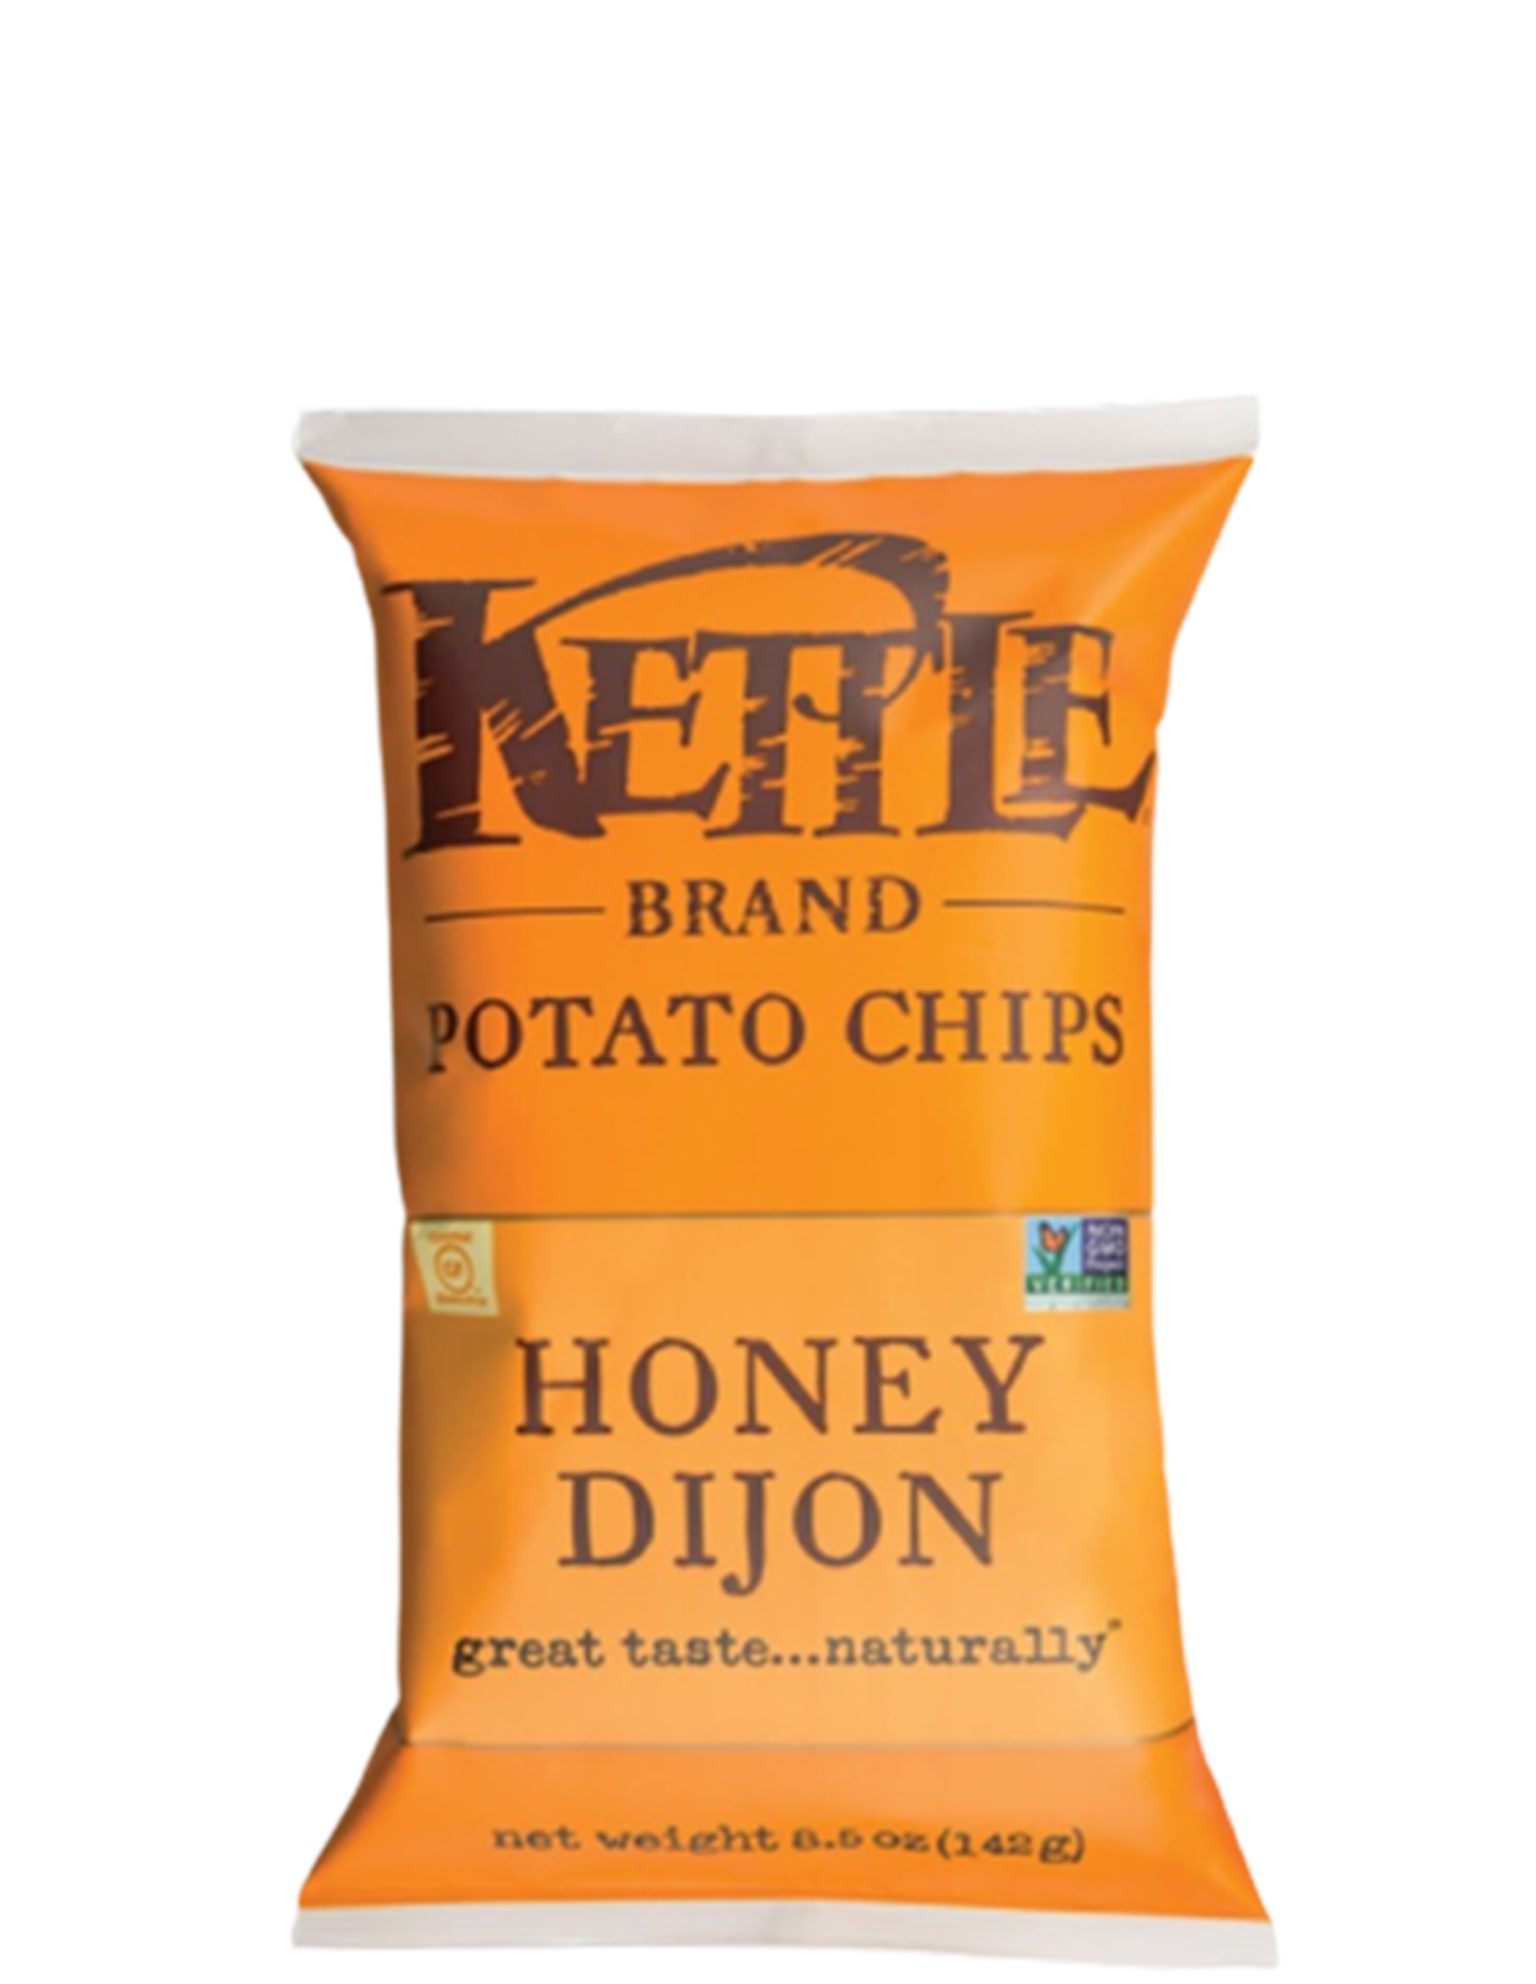 Kettle Honey Dijon 141 g-image